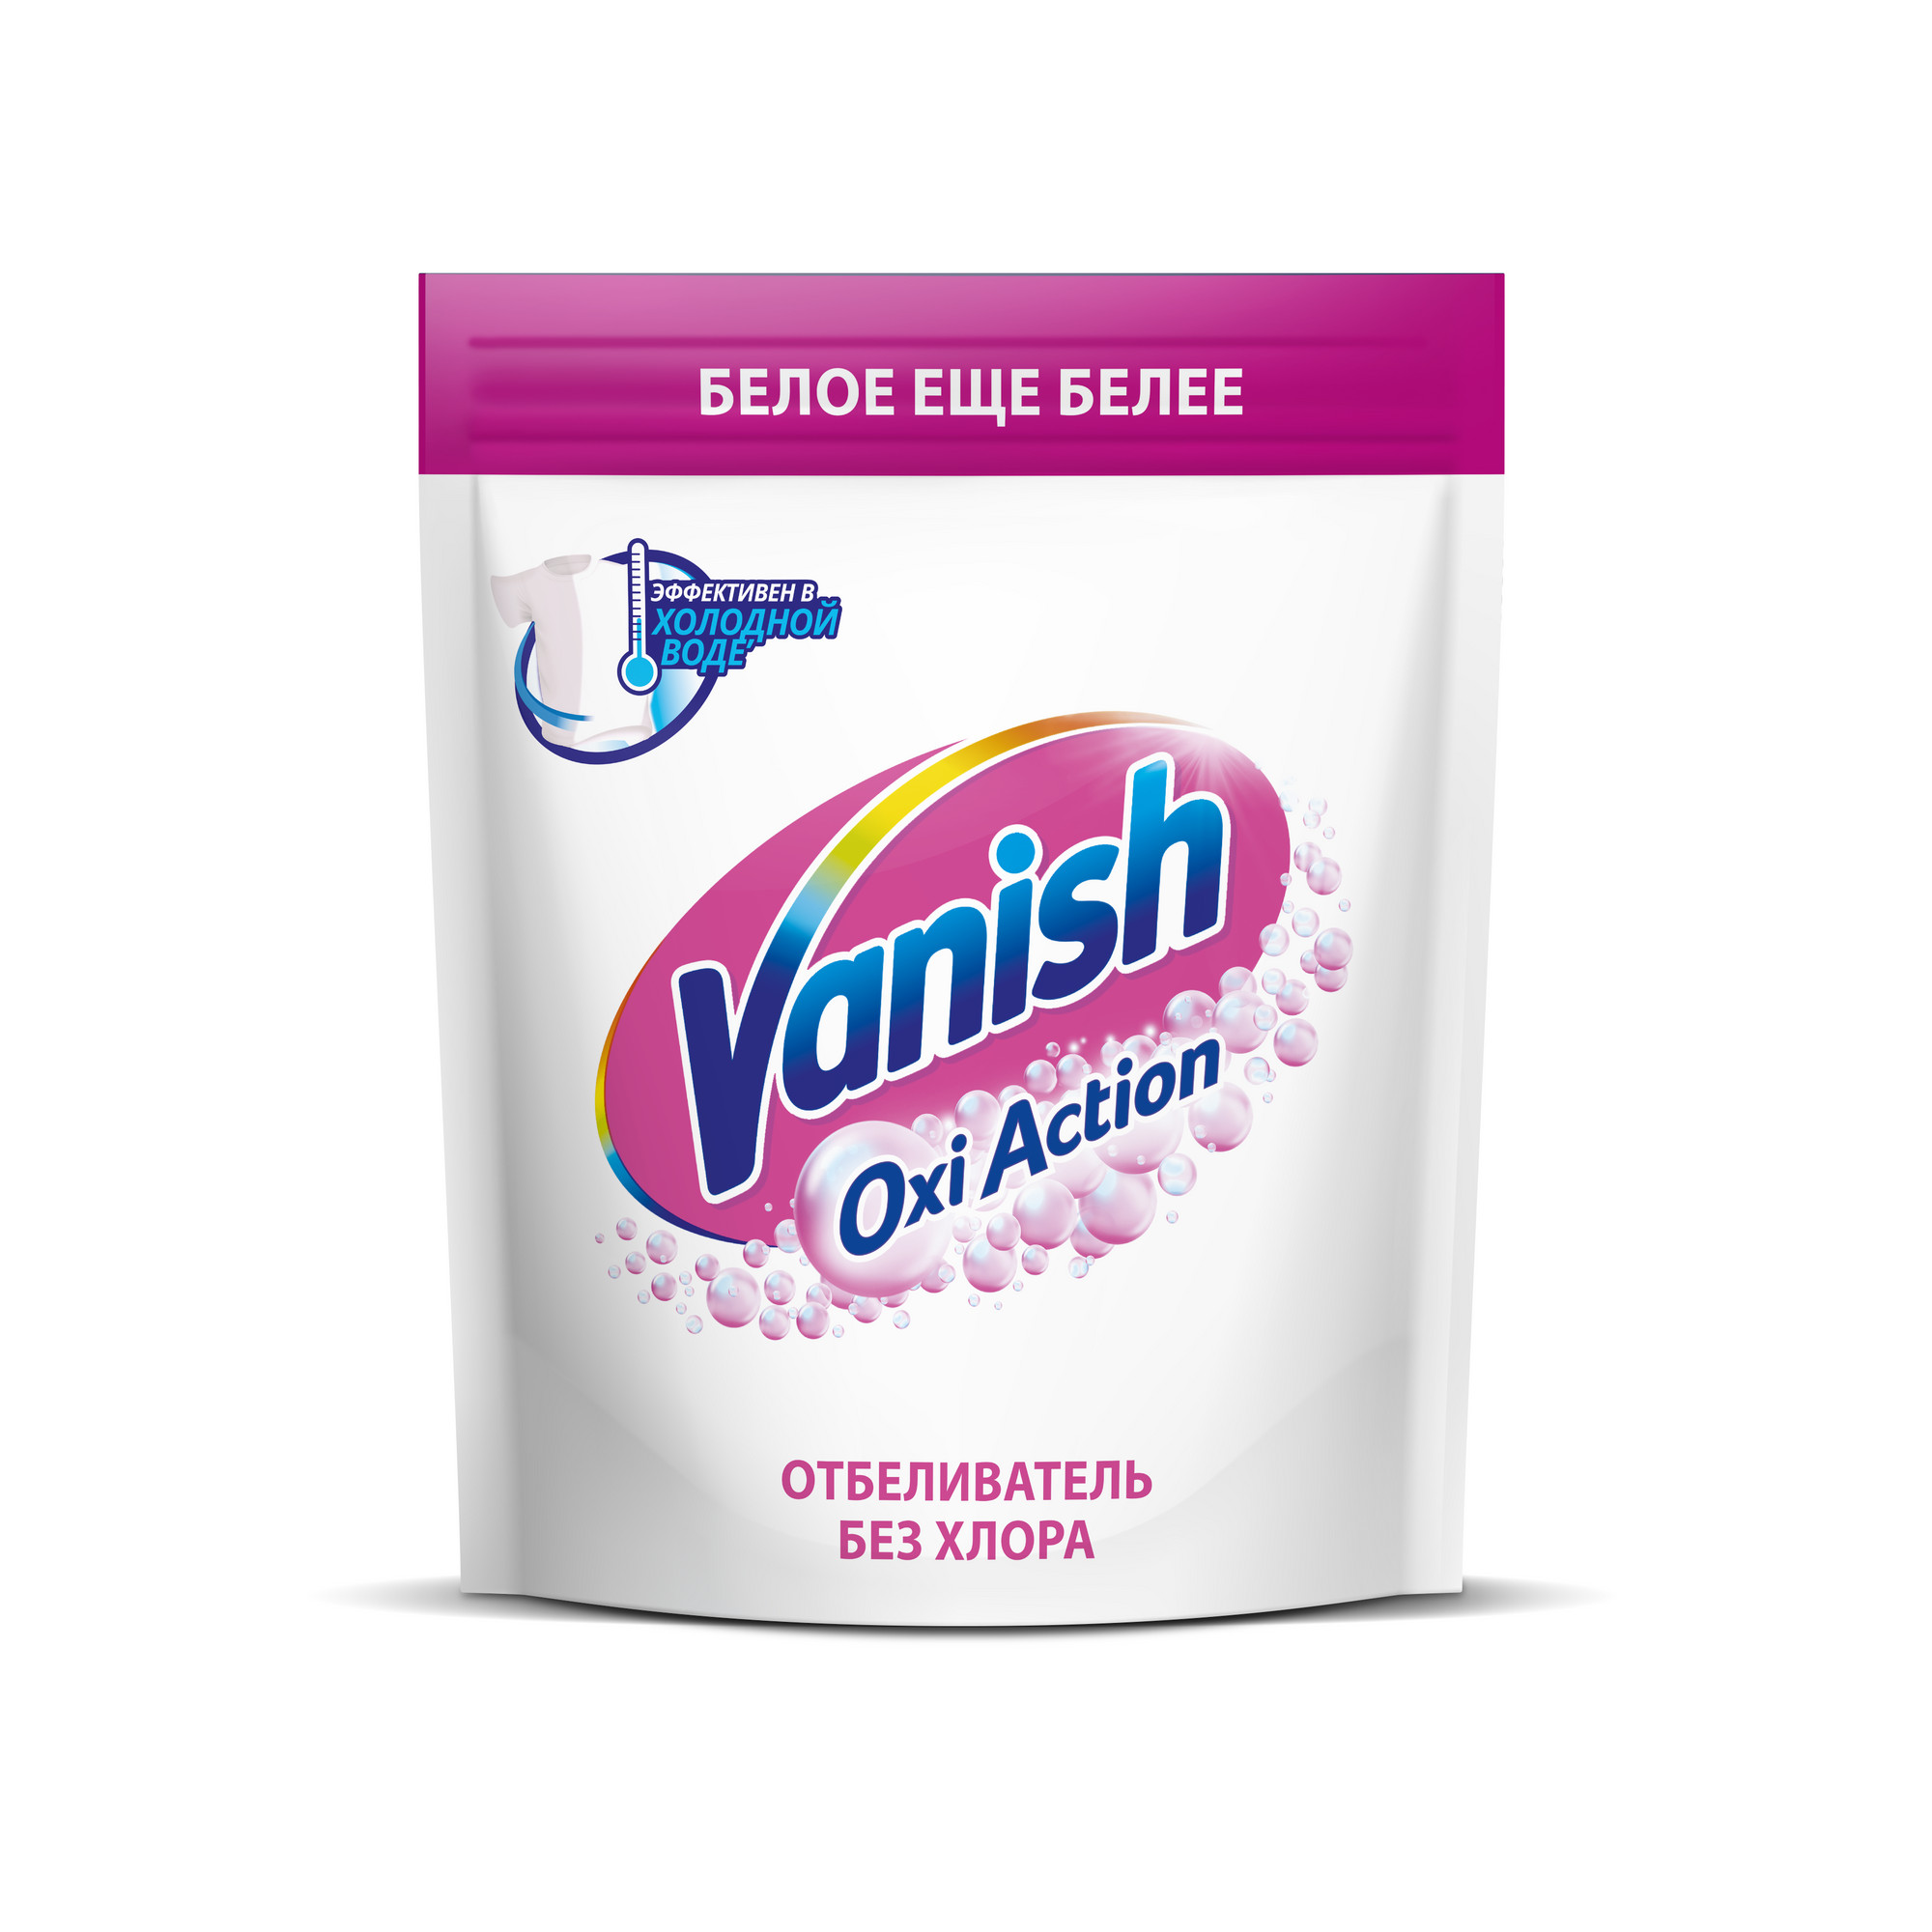 Пятновыводитель Vanish Oxi Action Кристальная Белизна порошкообразный 1 кг пятновыводитель vanish oxi action порошок 0 5 кг